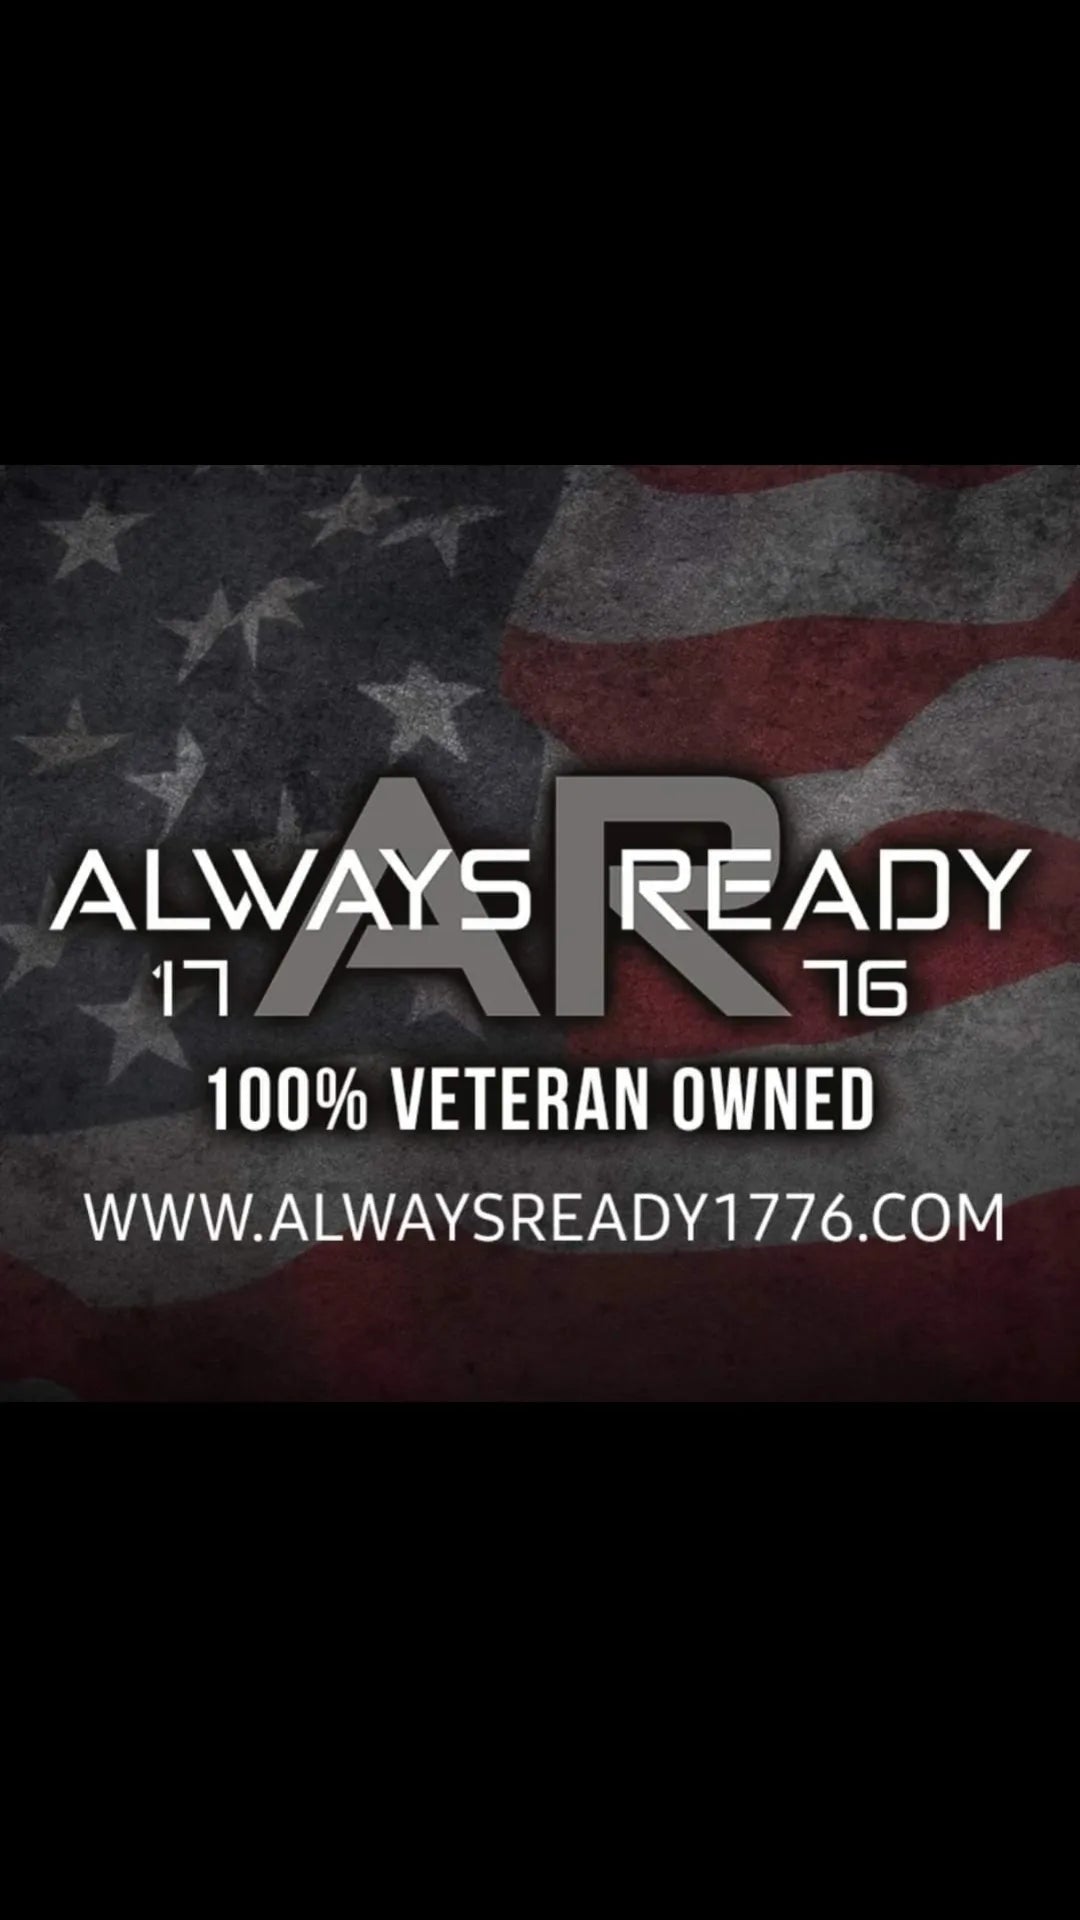 AlwaysReady1776